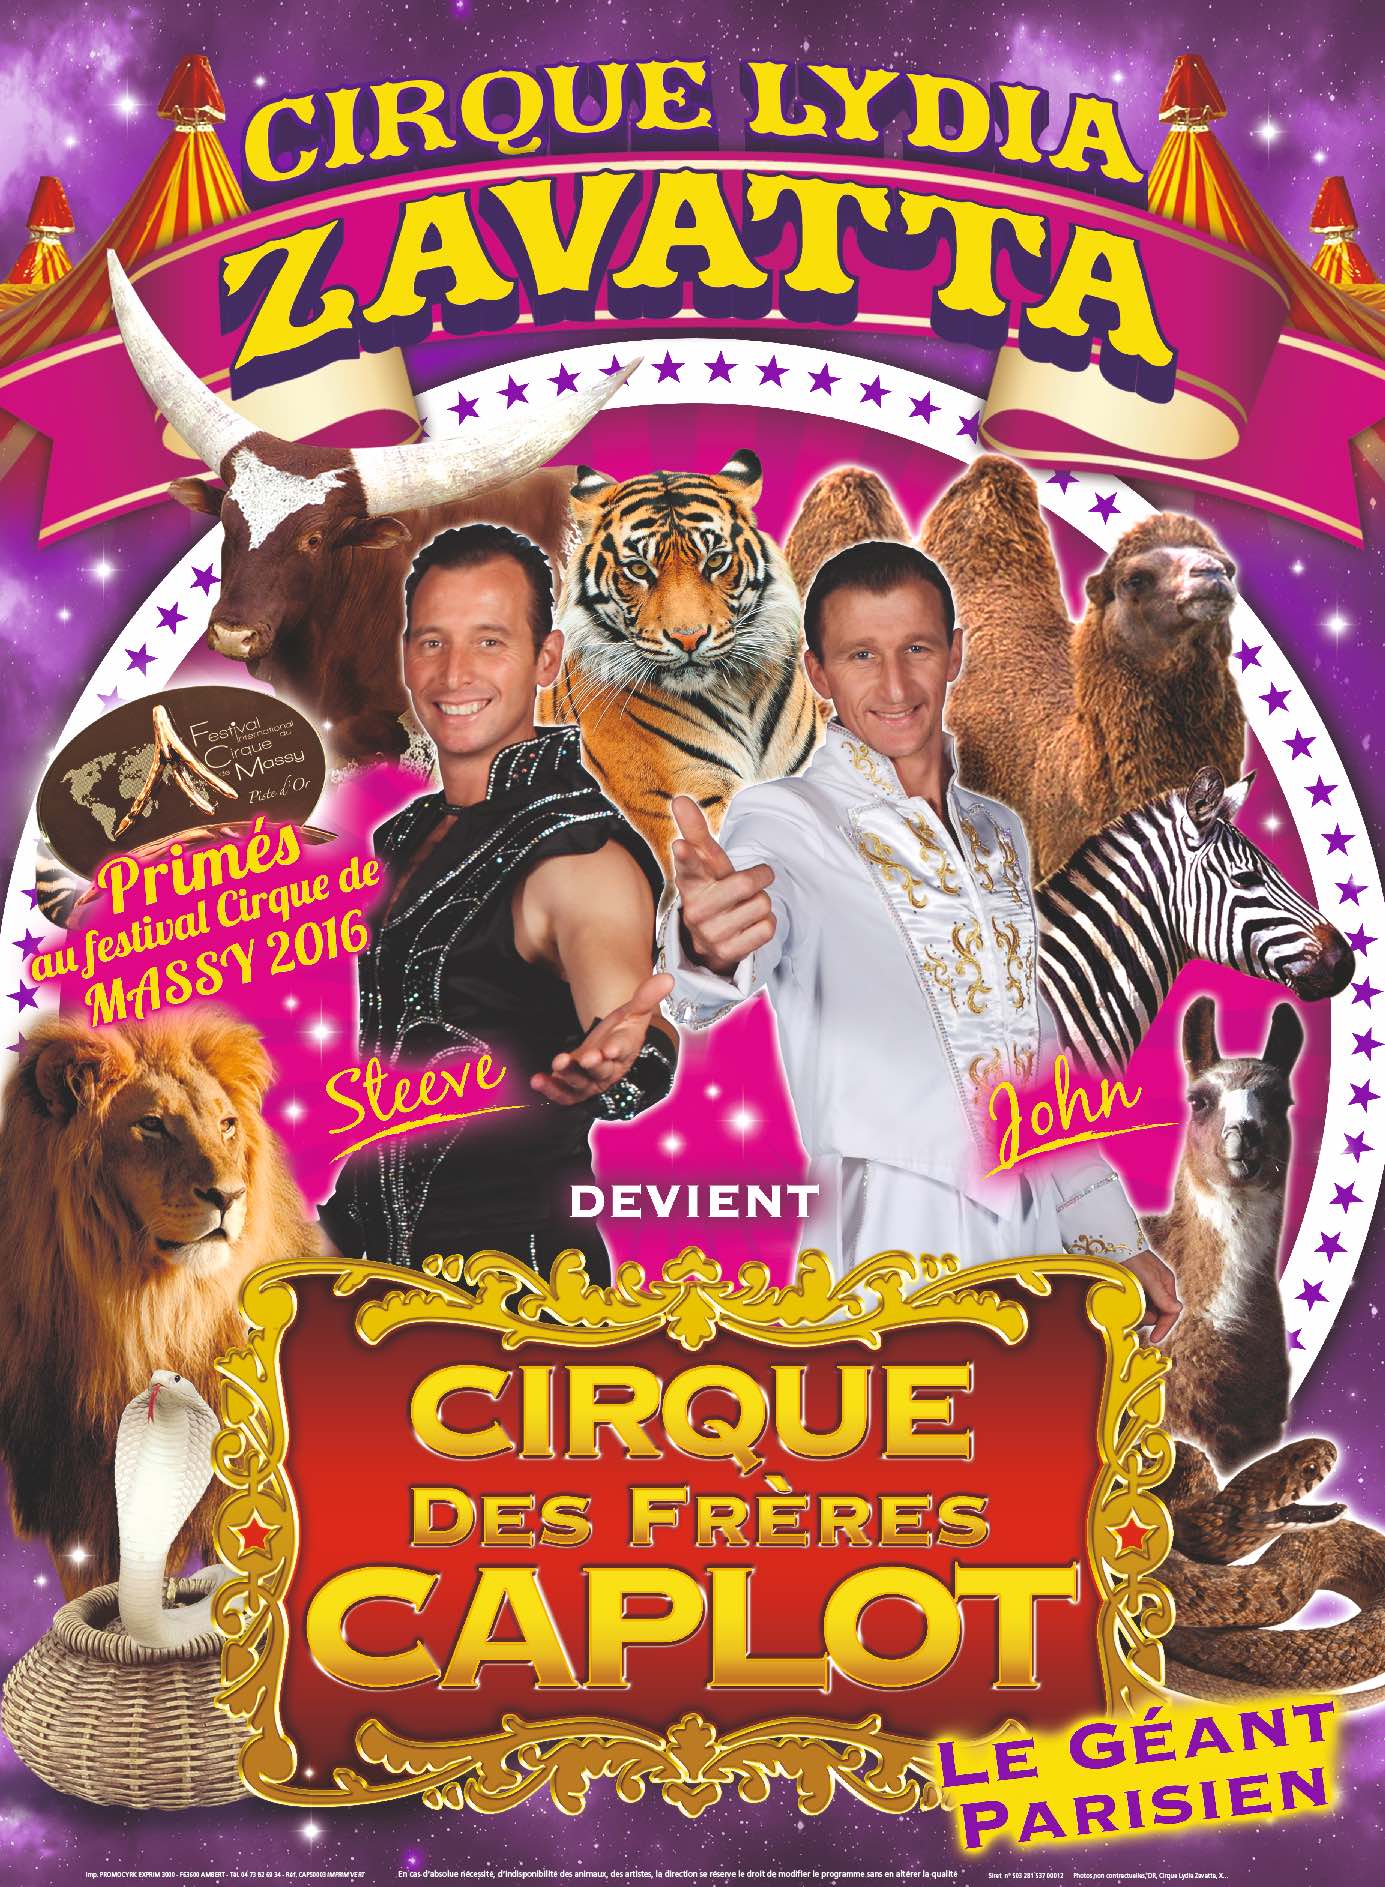 cirque caplot zavatta affiche